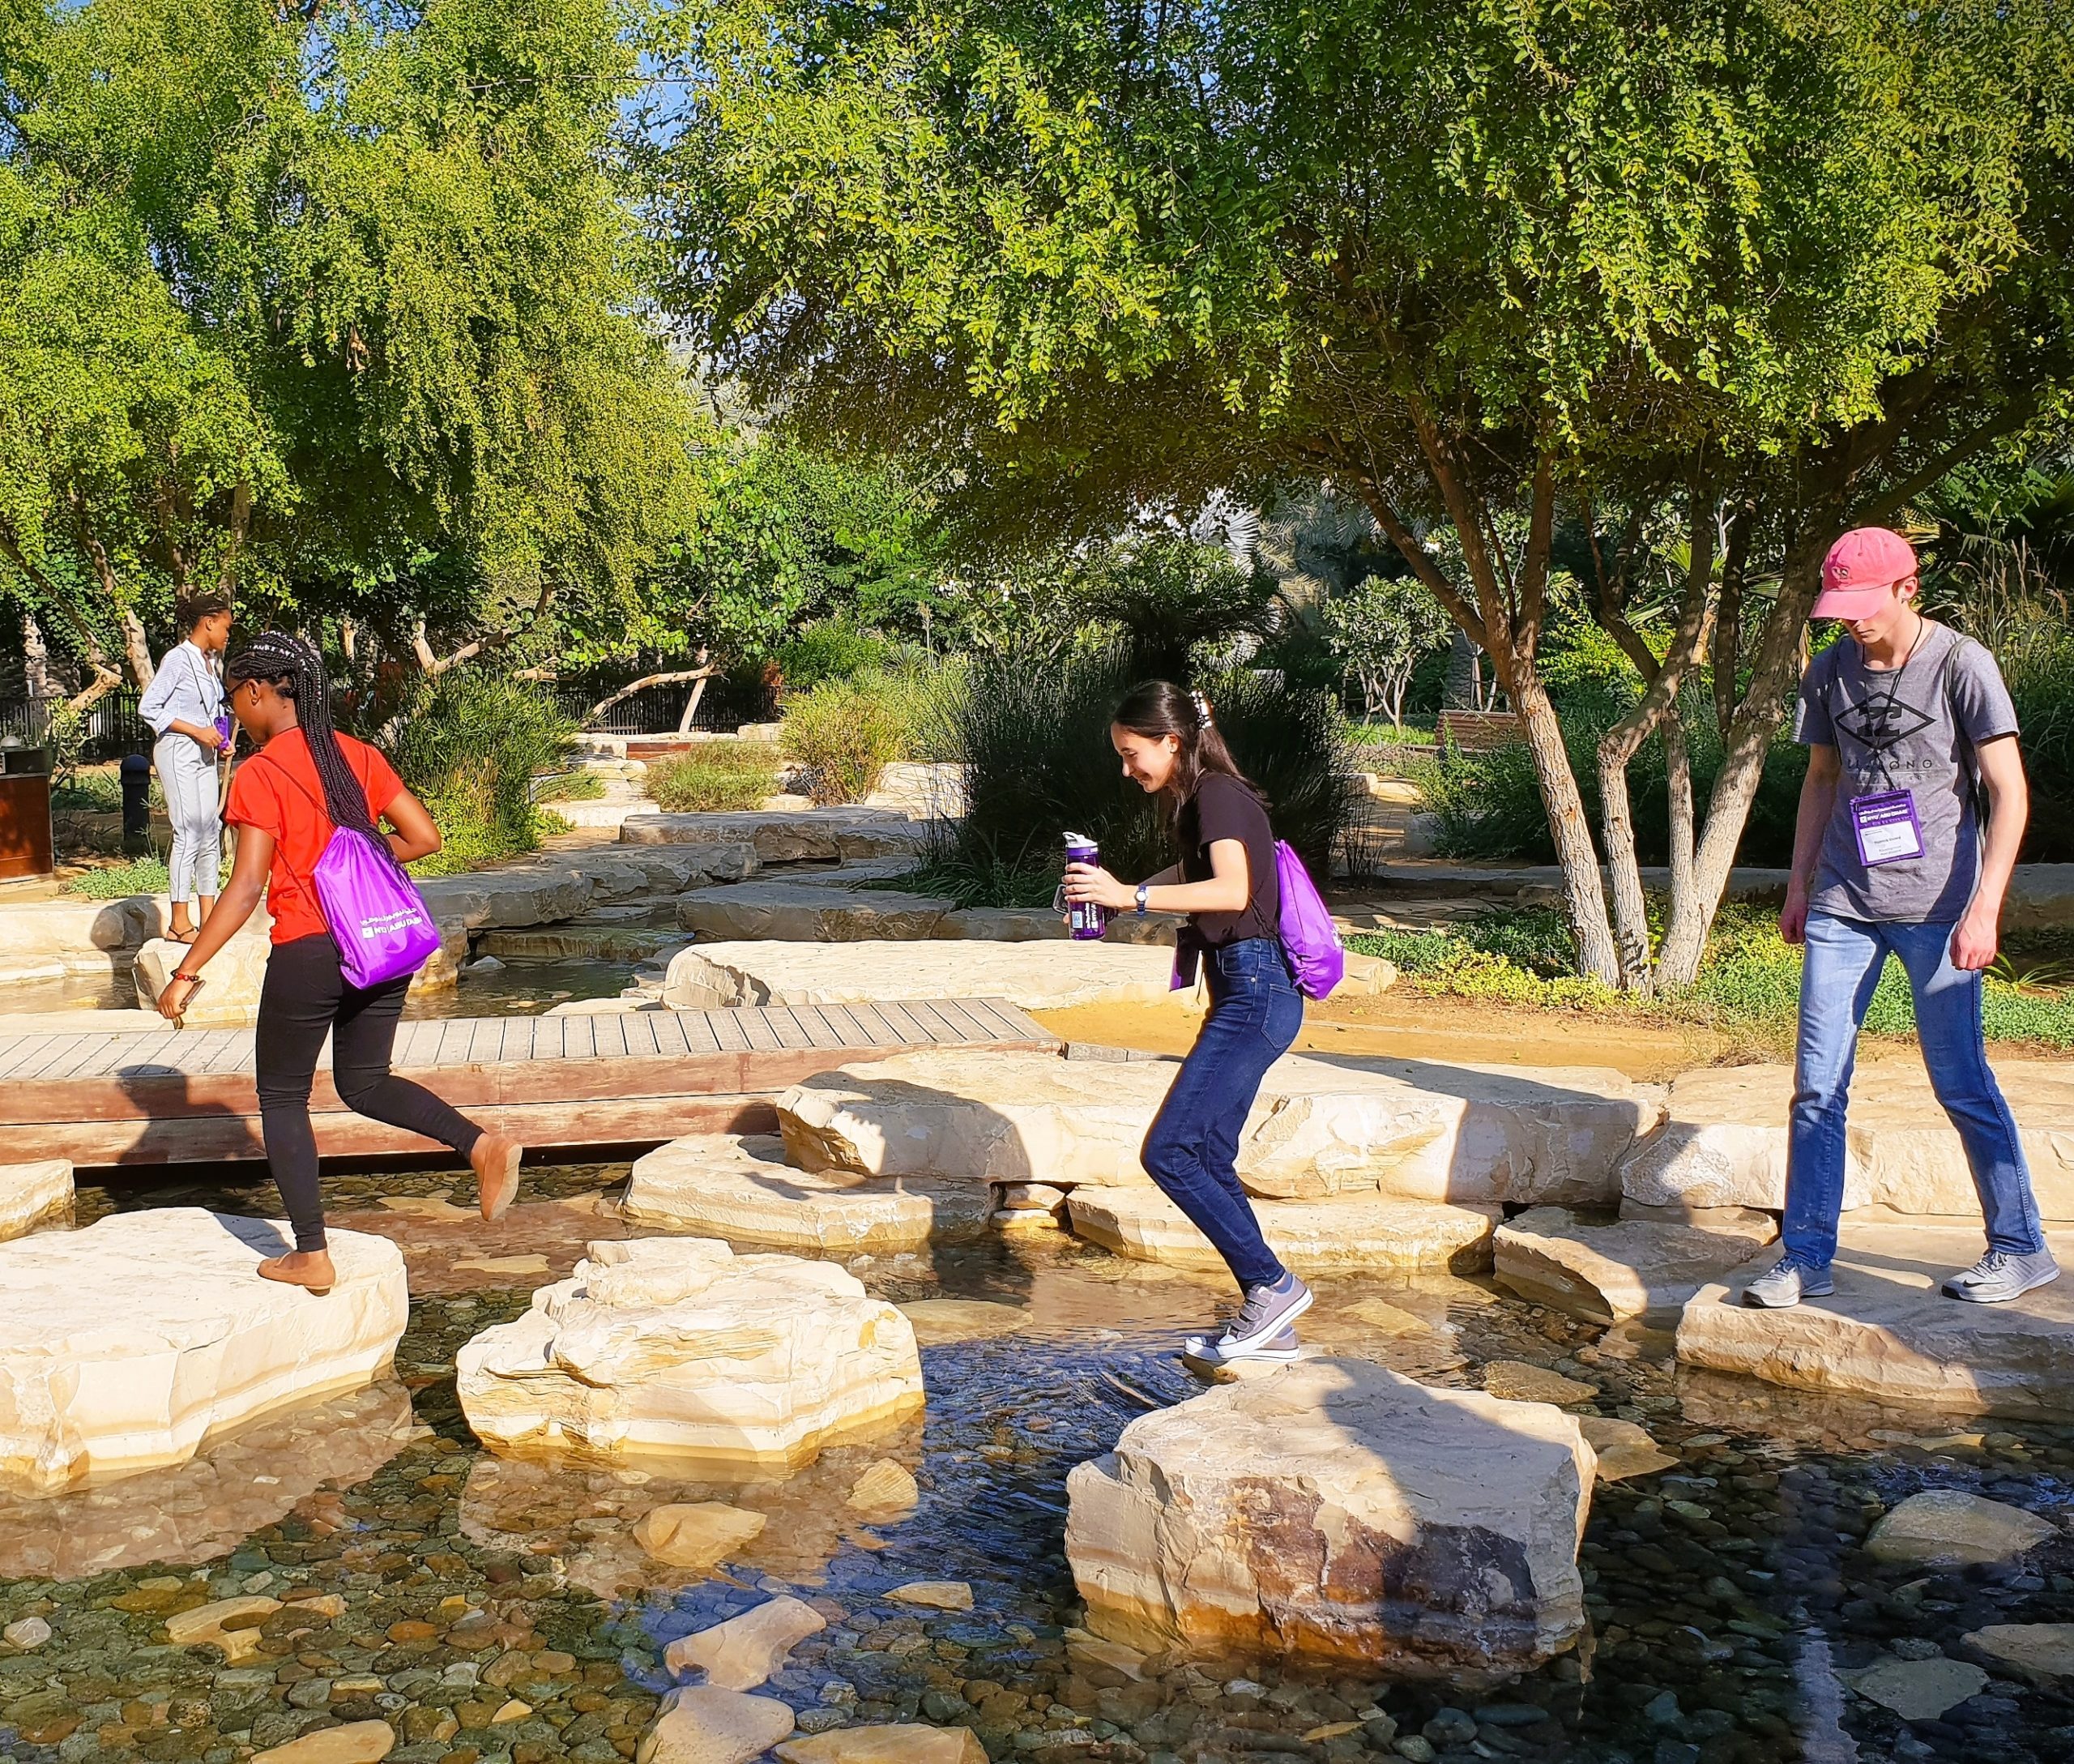 Students walking on rocks in water.